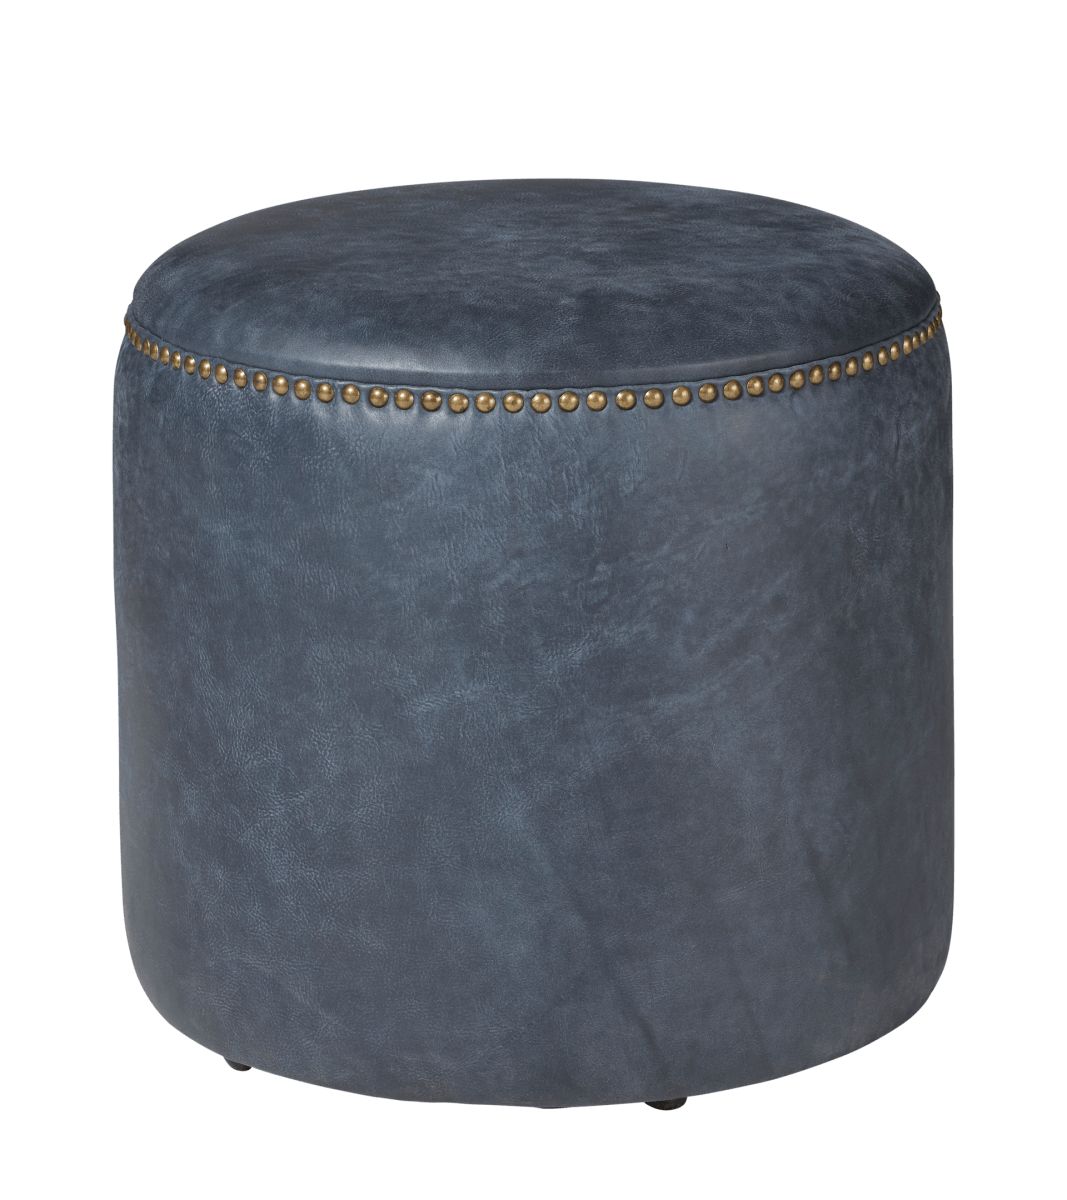 Costellini Leather Ottoman - Smoke Blue | OKA US